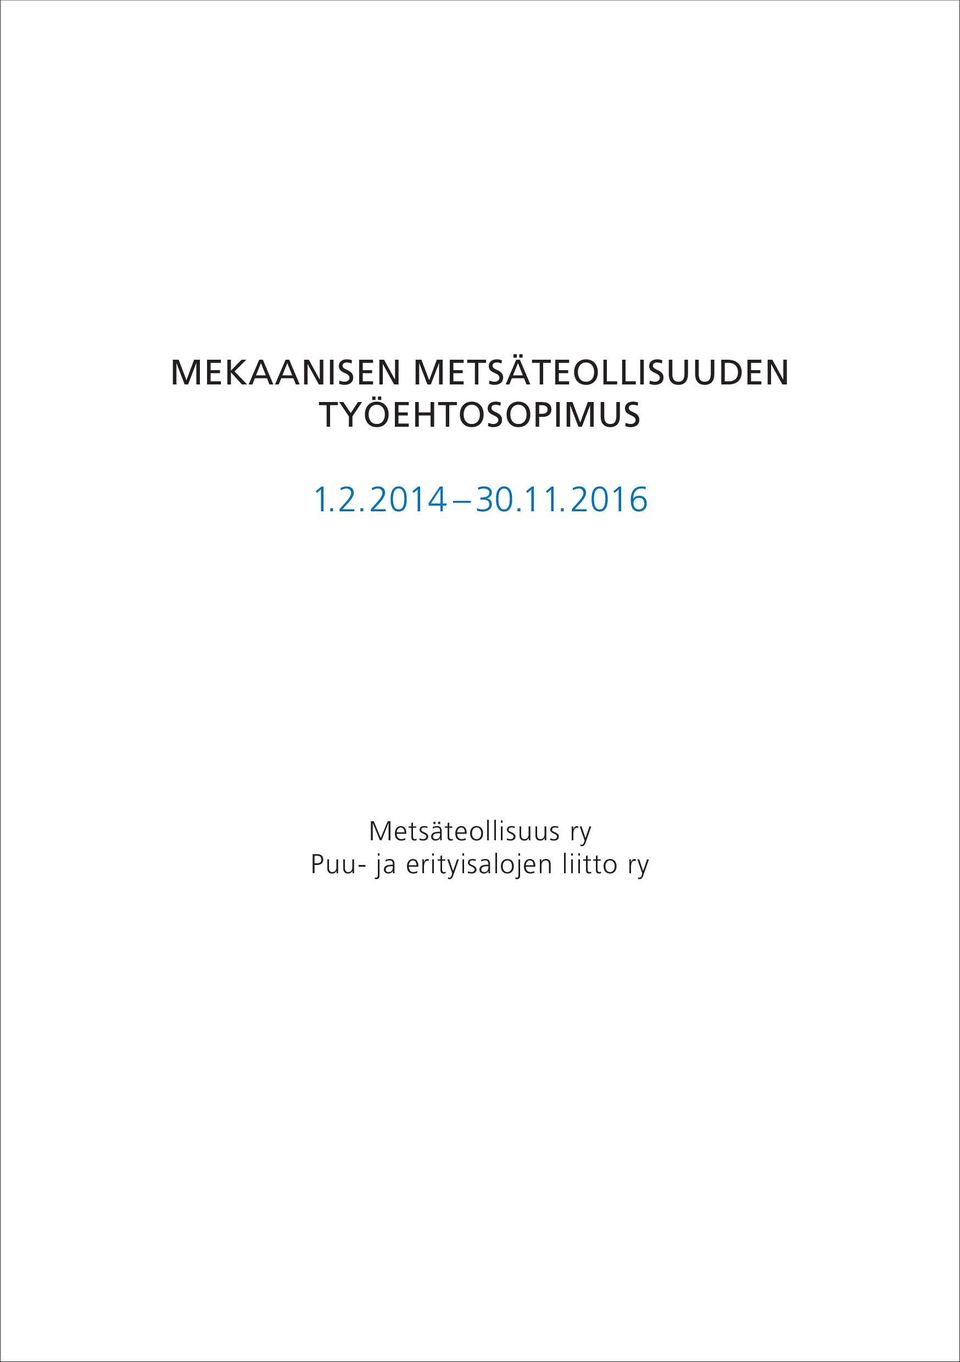 MEKAANISEN METSÄTEOLLISUUDEN TYÖEHTOSOPIMUS - PDF Ilmainen lataus